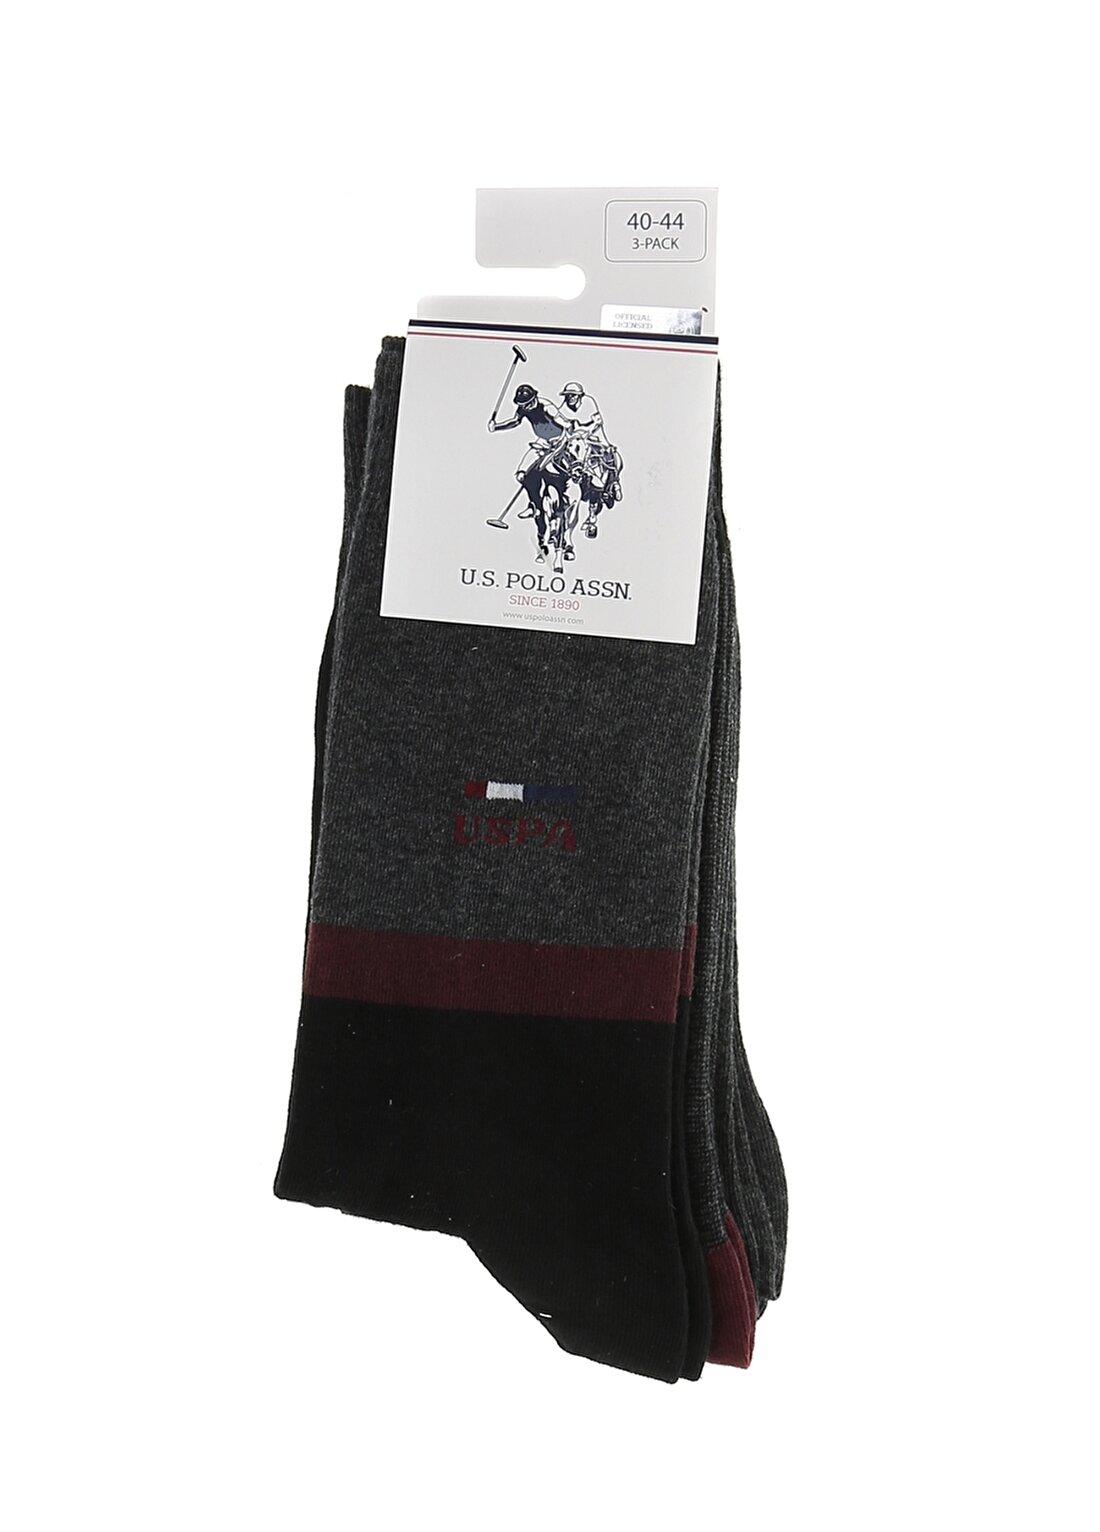 U.S. Polo Assn. Gri Melanj Erkek Çorap